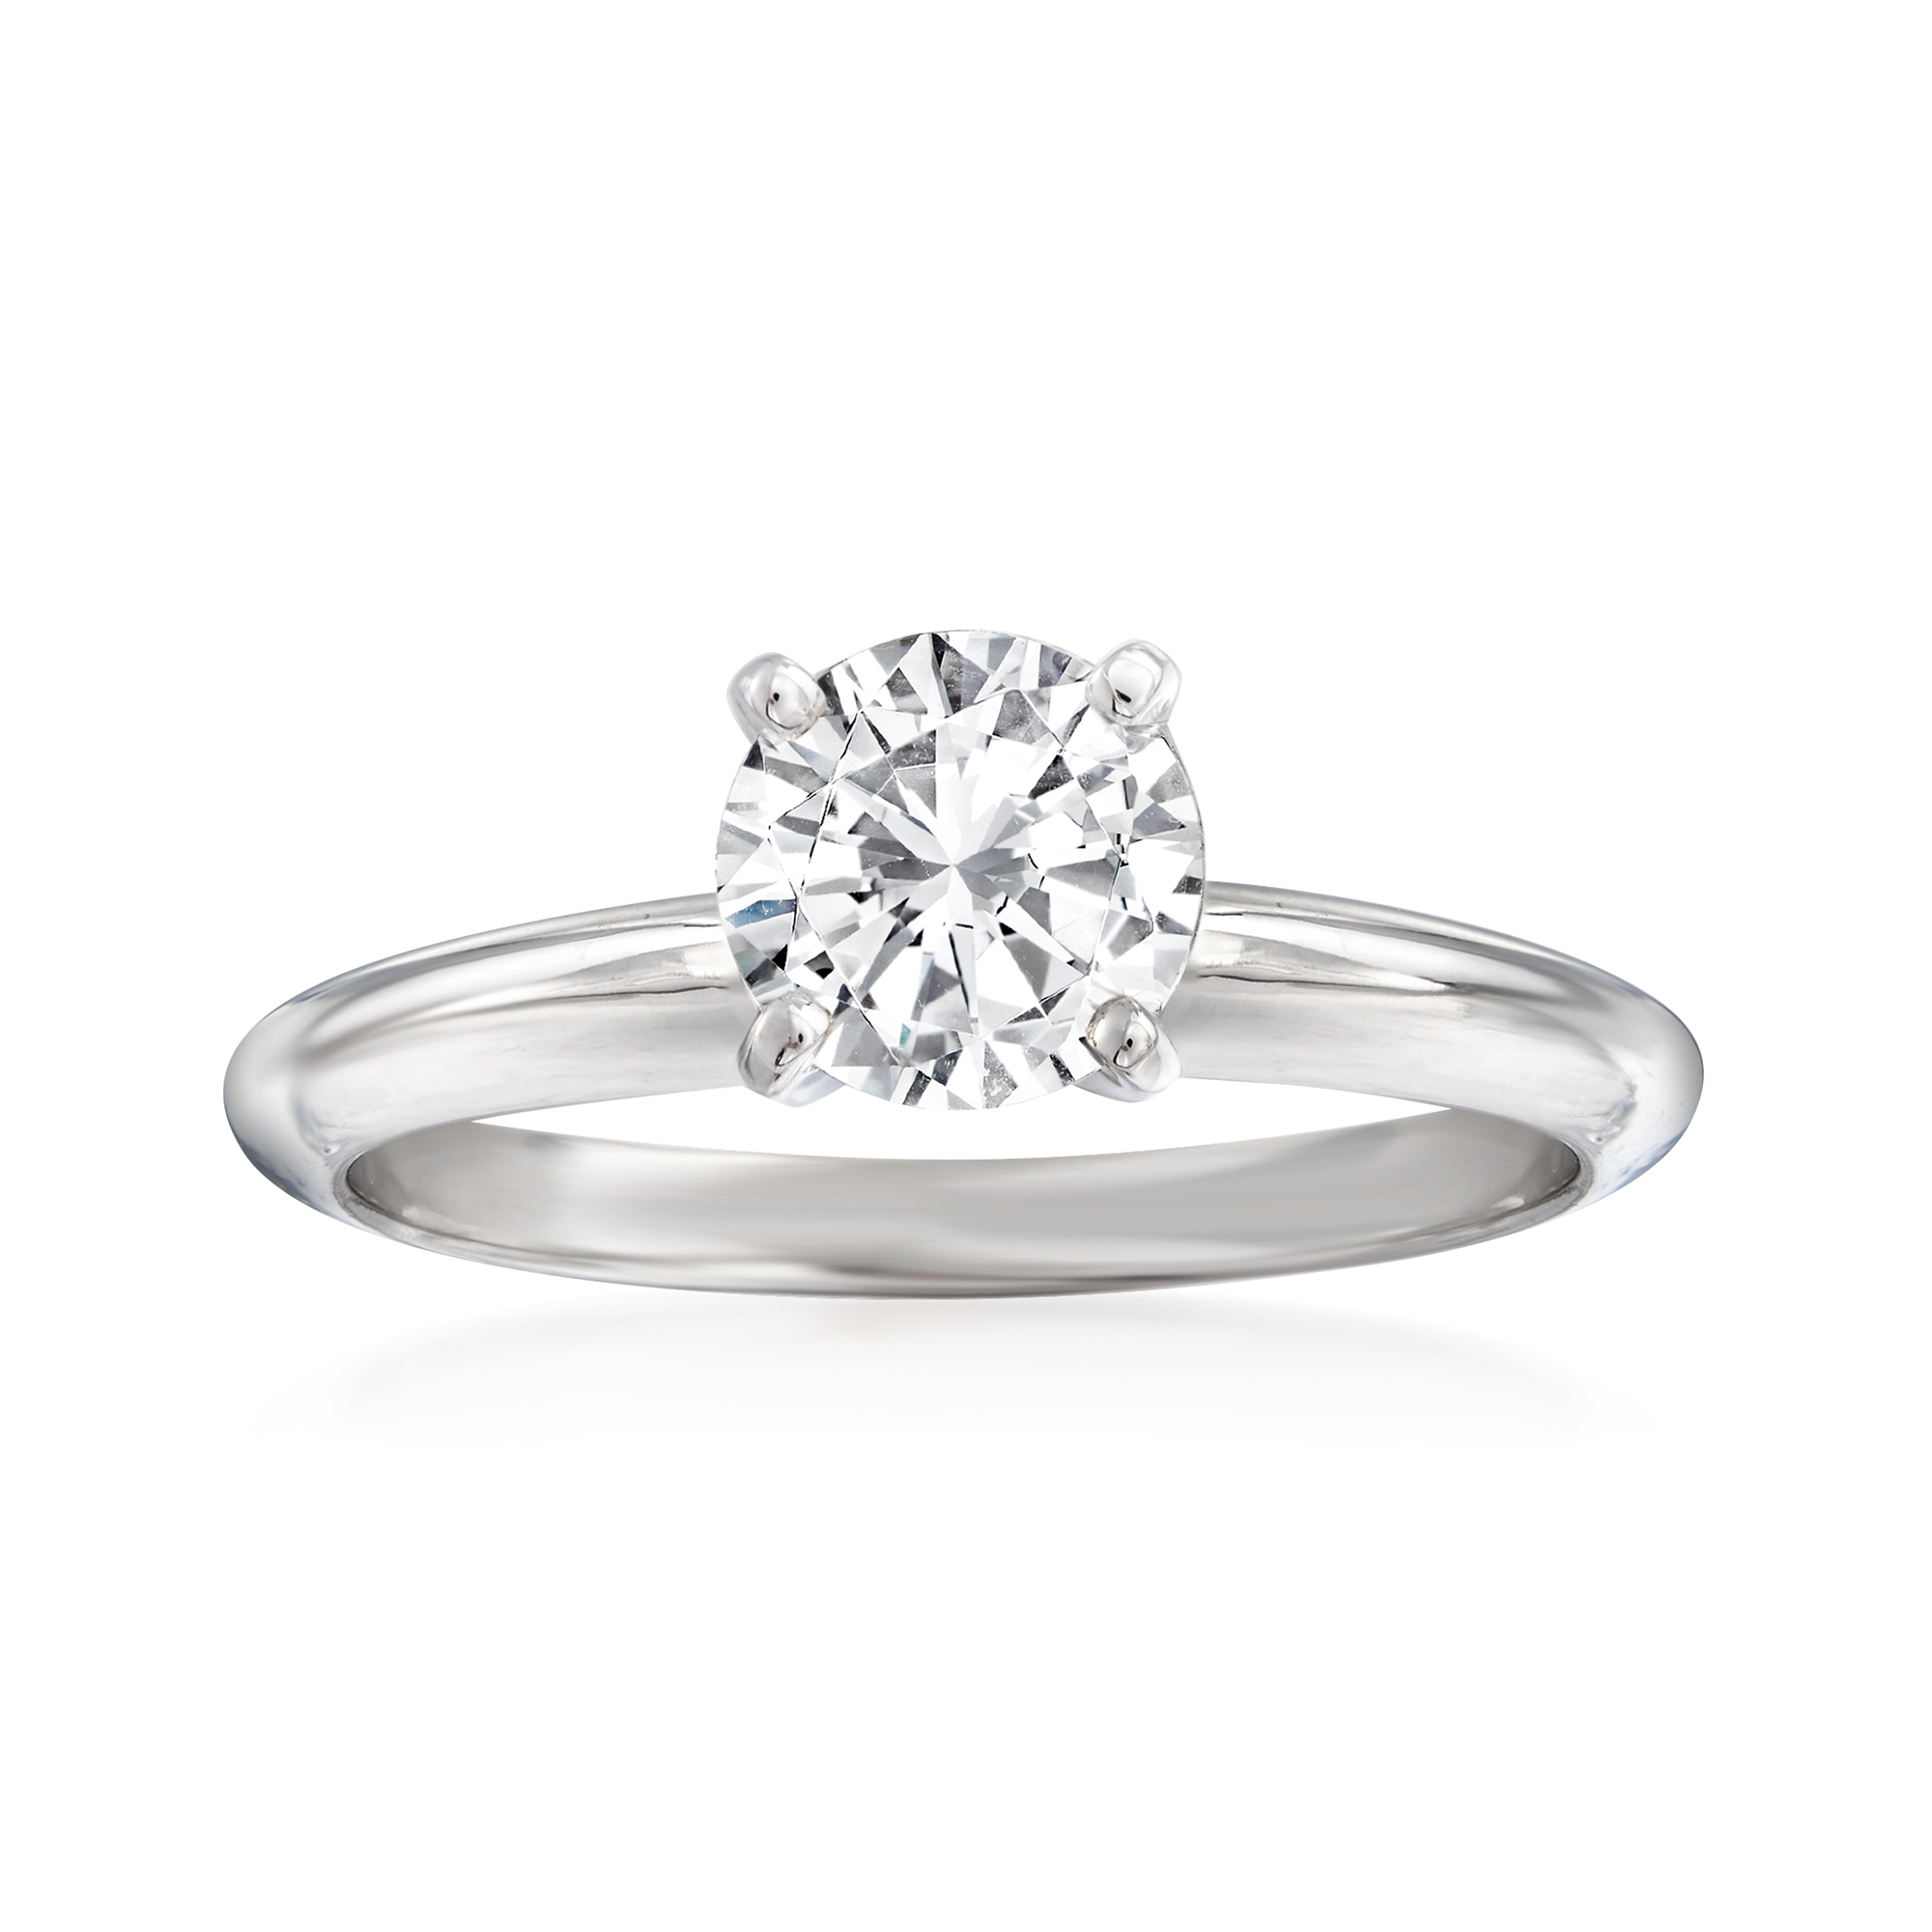 .95 Carat Diamond Ring in 14kt White Gold | Ross-Simons